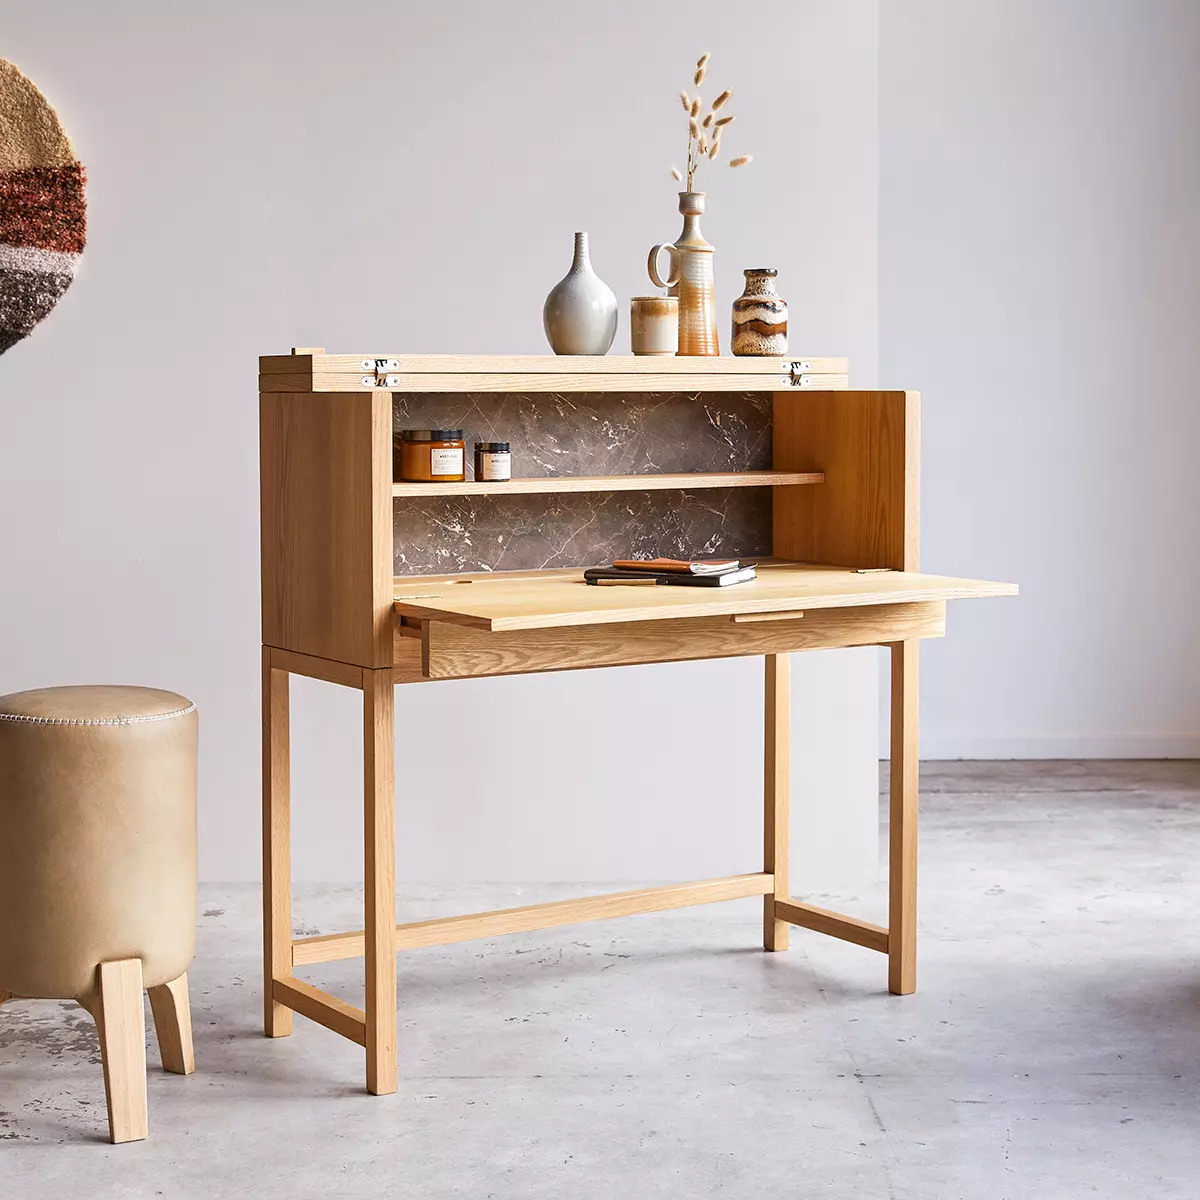 Un bureau rabattable en bois et intérieur marbre